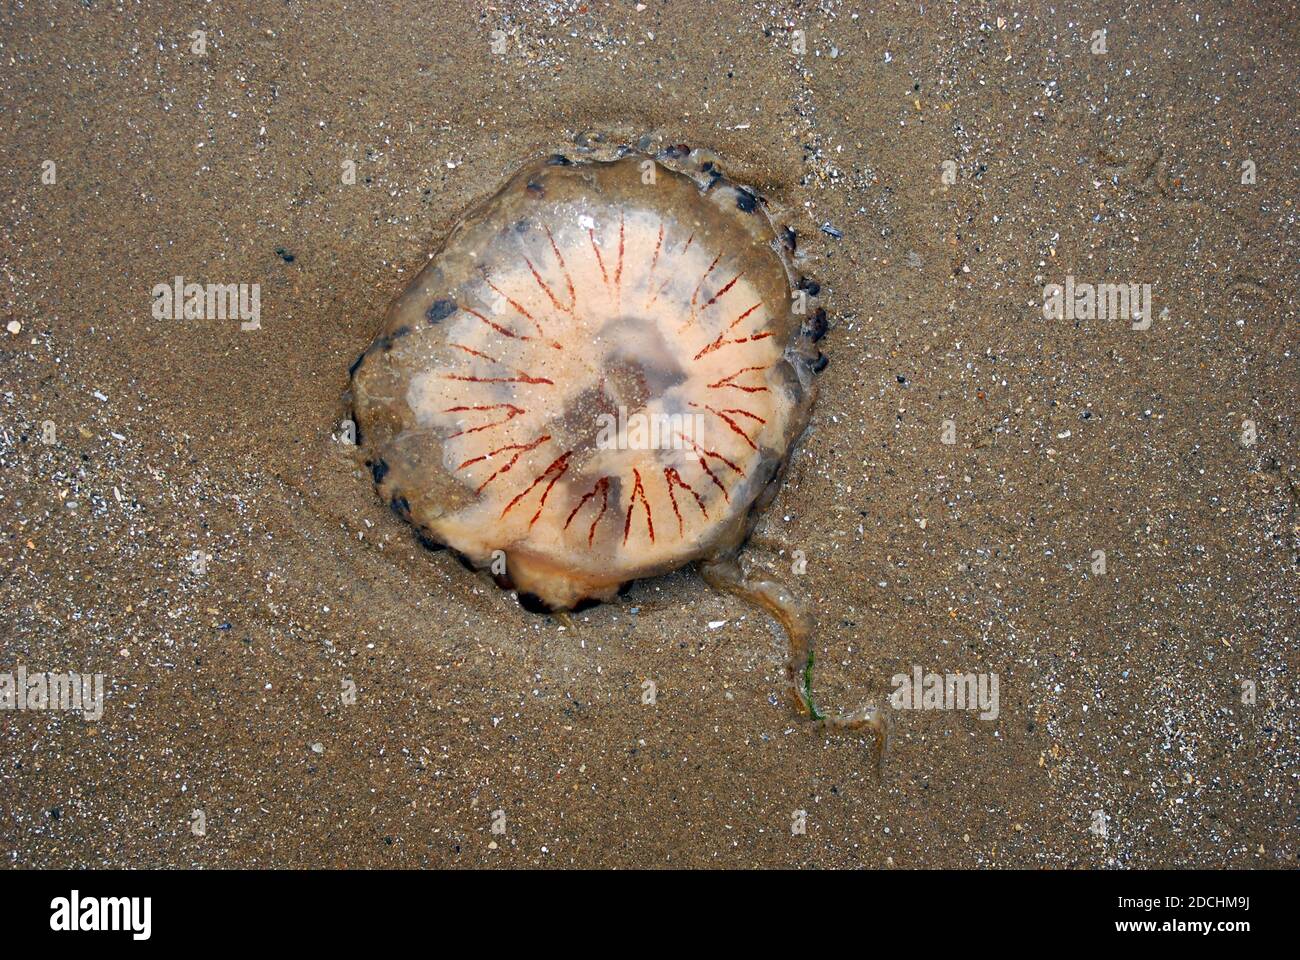 Chrysaora hyssoscella, die Kompassqualle, am Strand ausgewaschen Diese gewöhnliche Art von Quallen bewohnt die Gewässer der Nordsee und des Mittelmeers Stockfoto